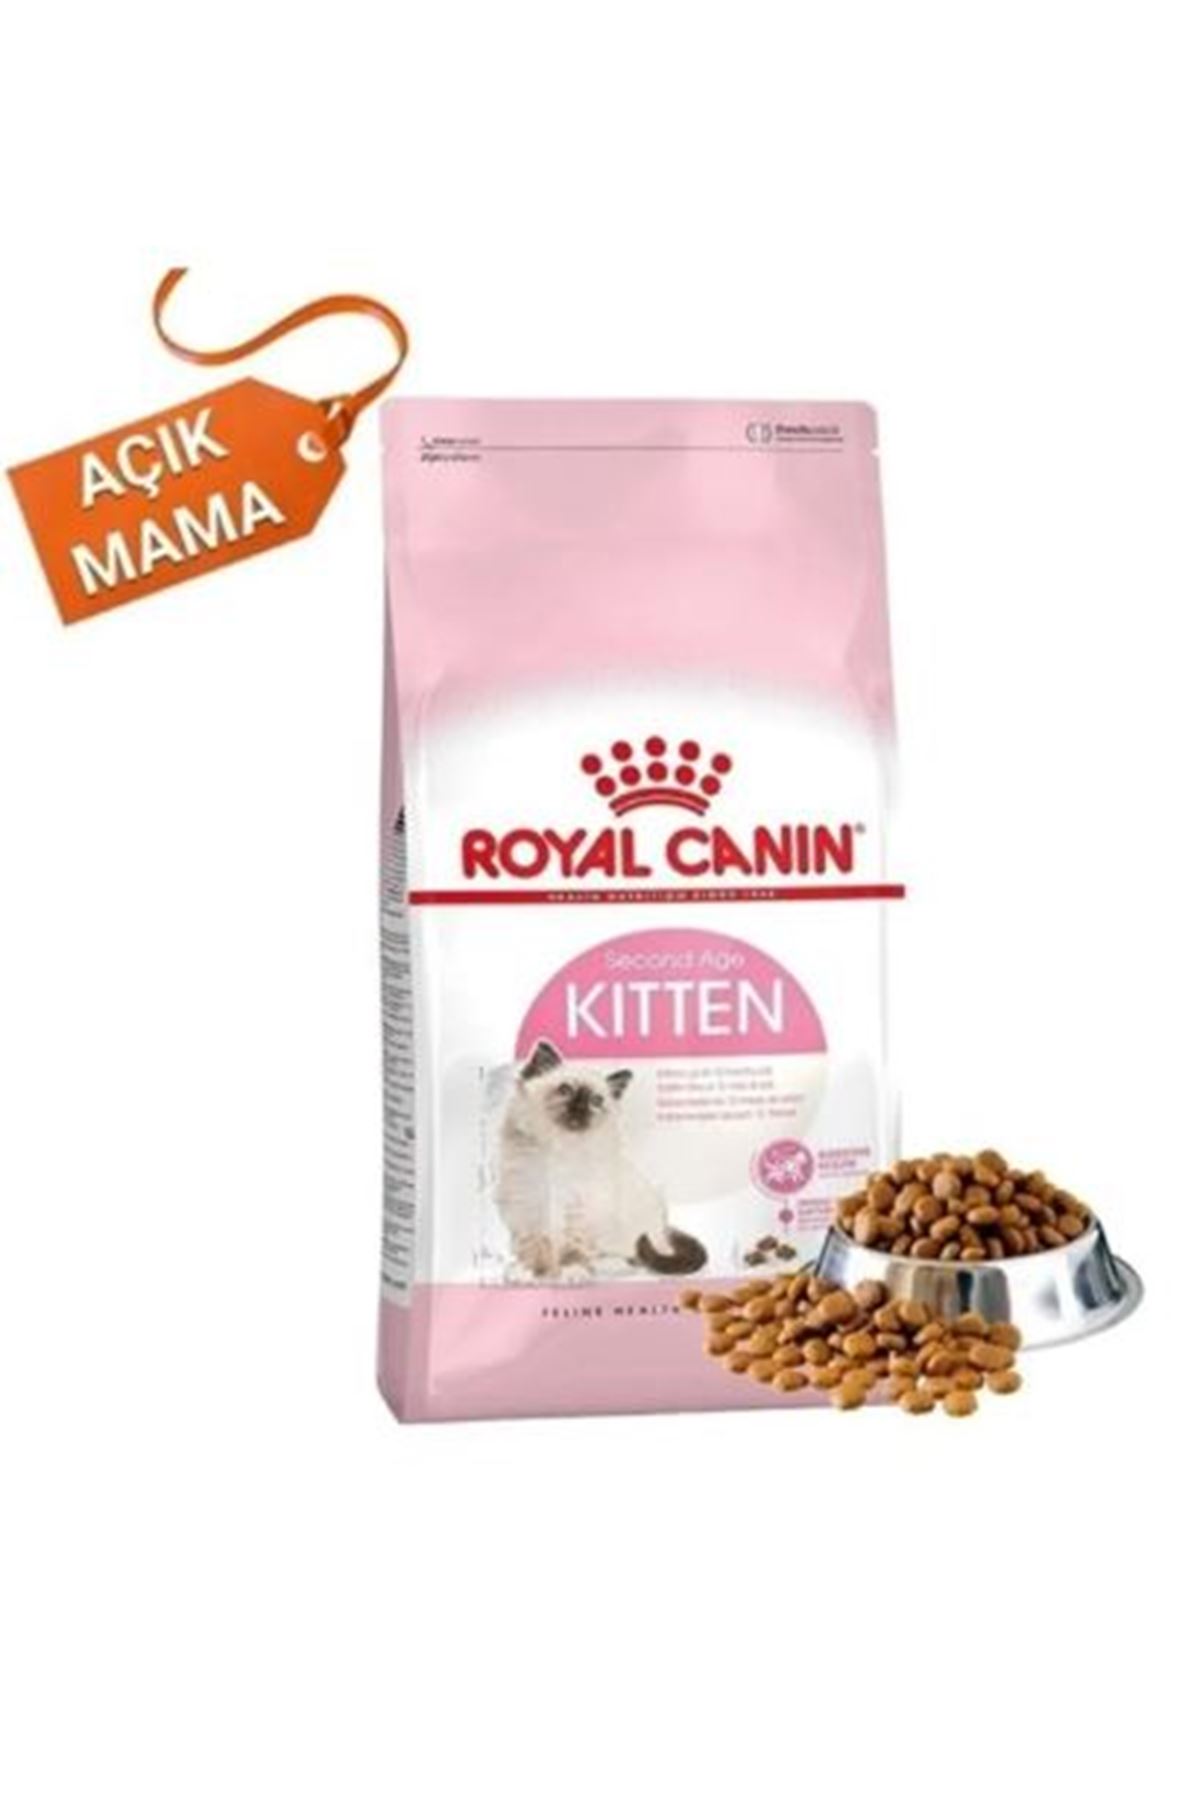 Royal Canin Kitten Yavru Kedi Maması- Açık mama 1 kg